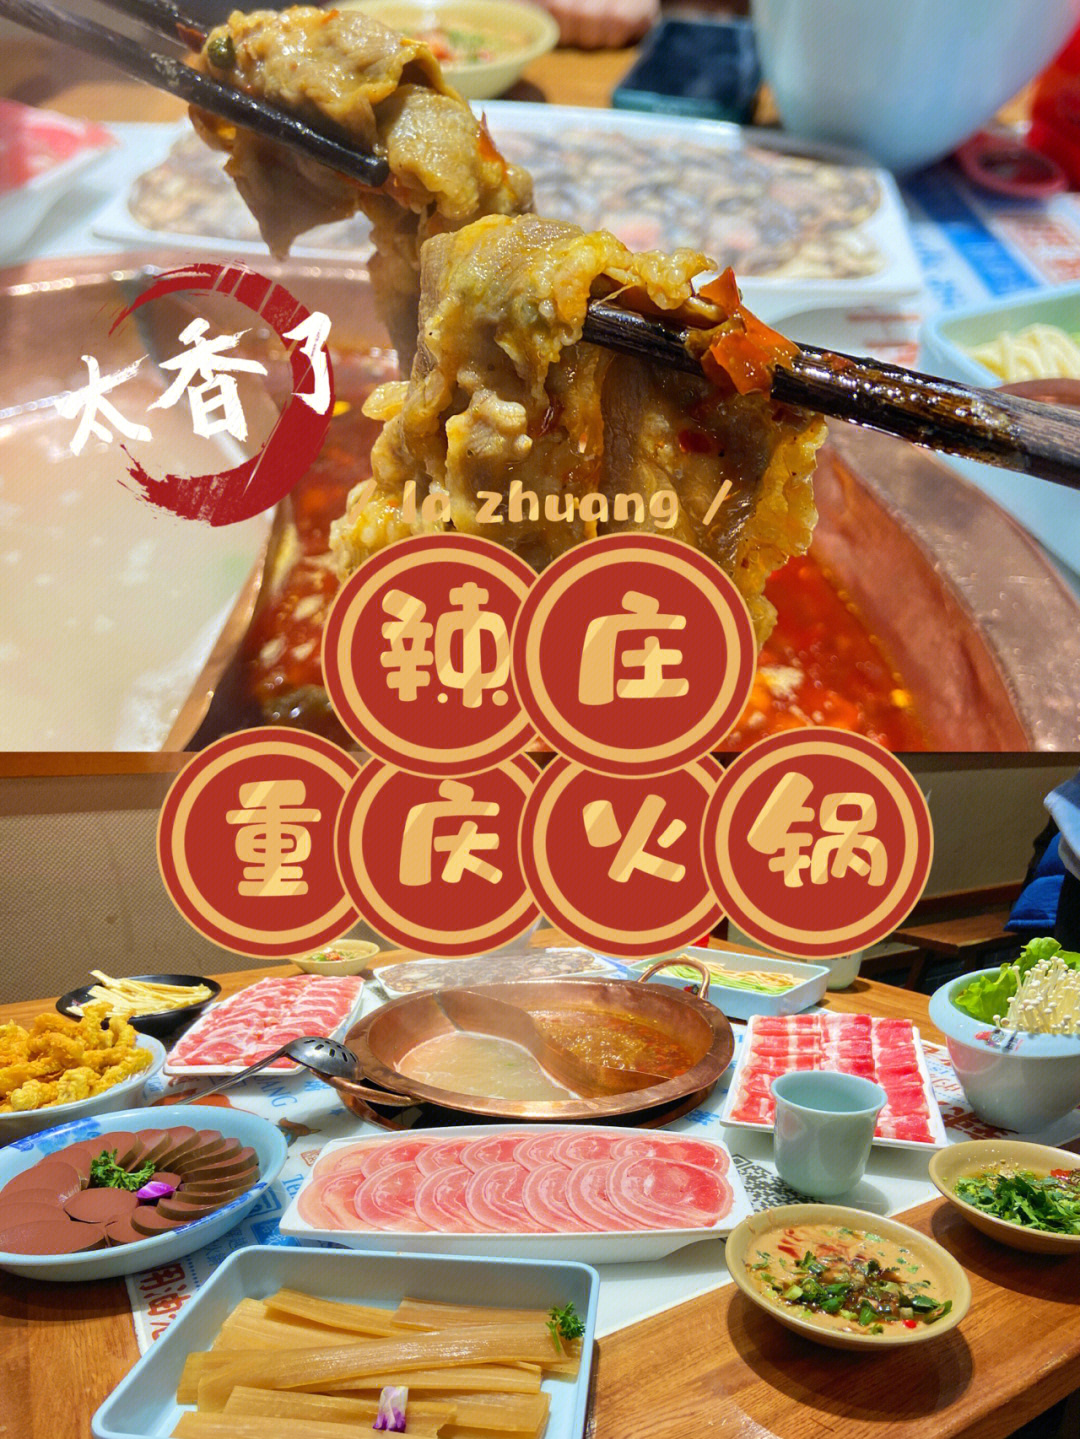 辣庄重庆老火锅菜单图片